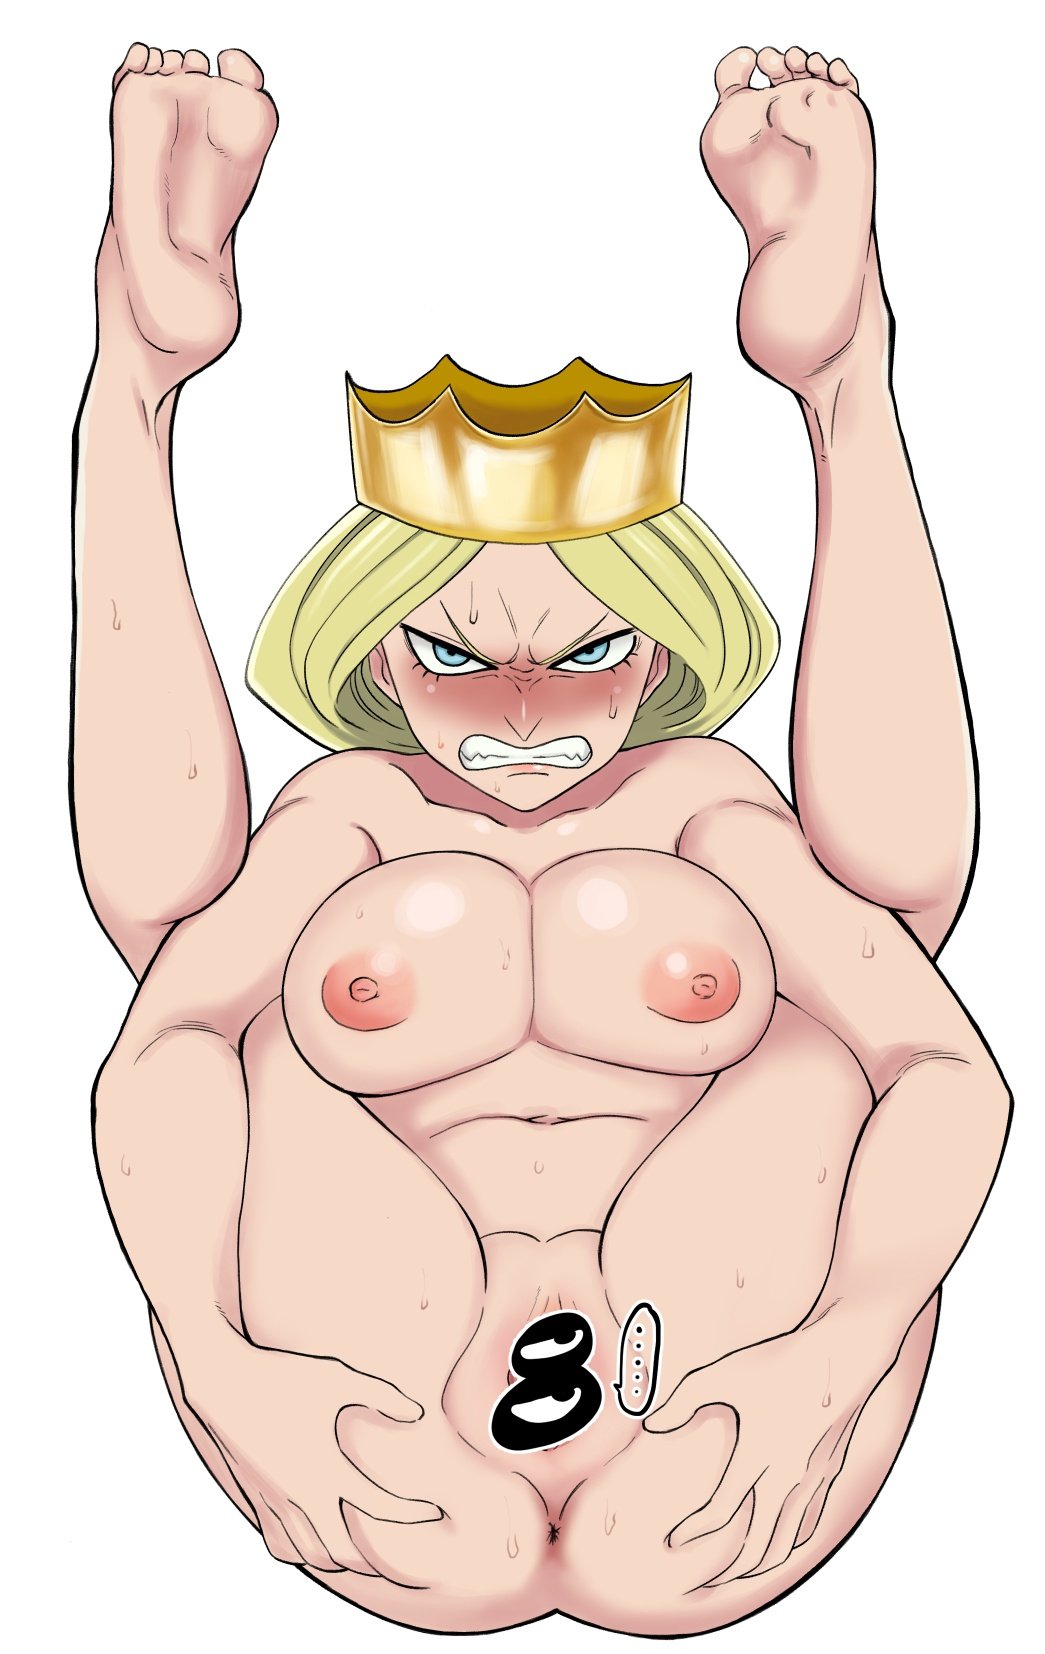 Queen hilling nude